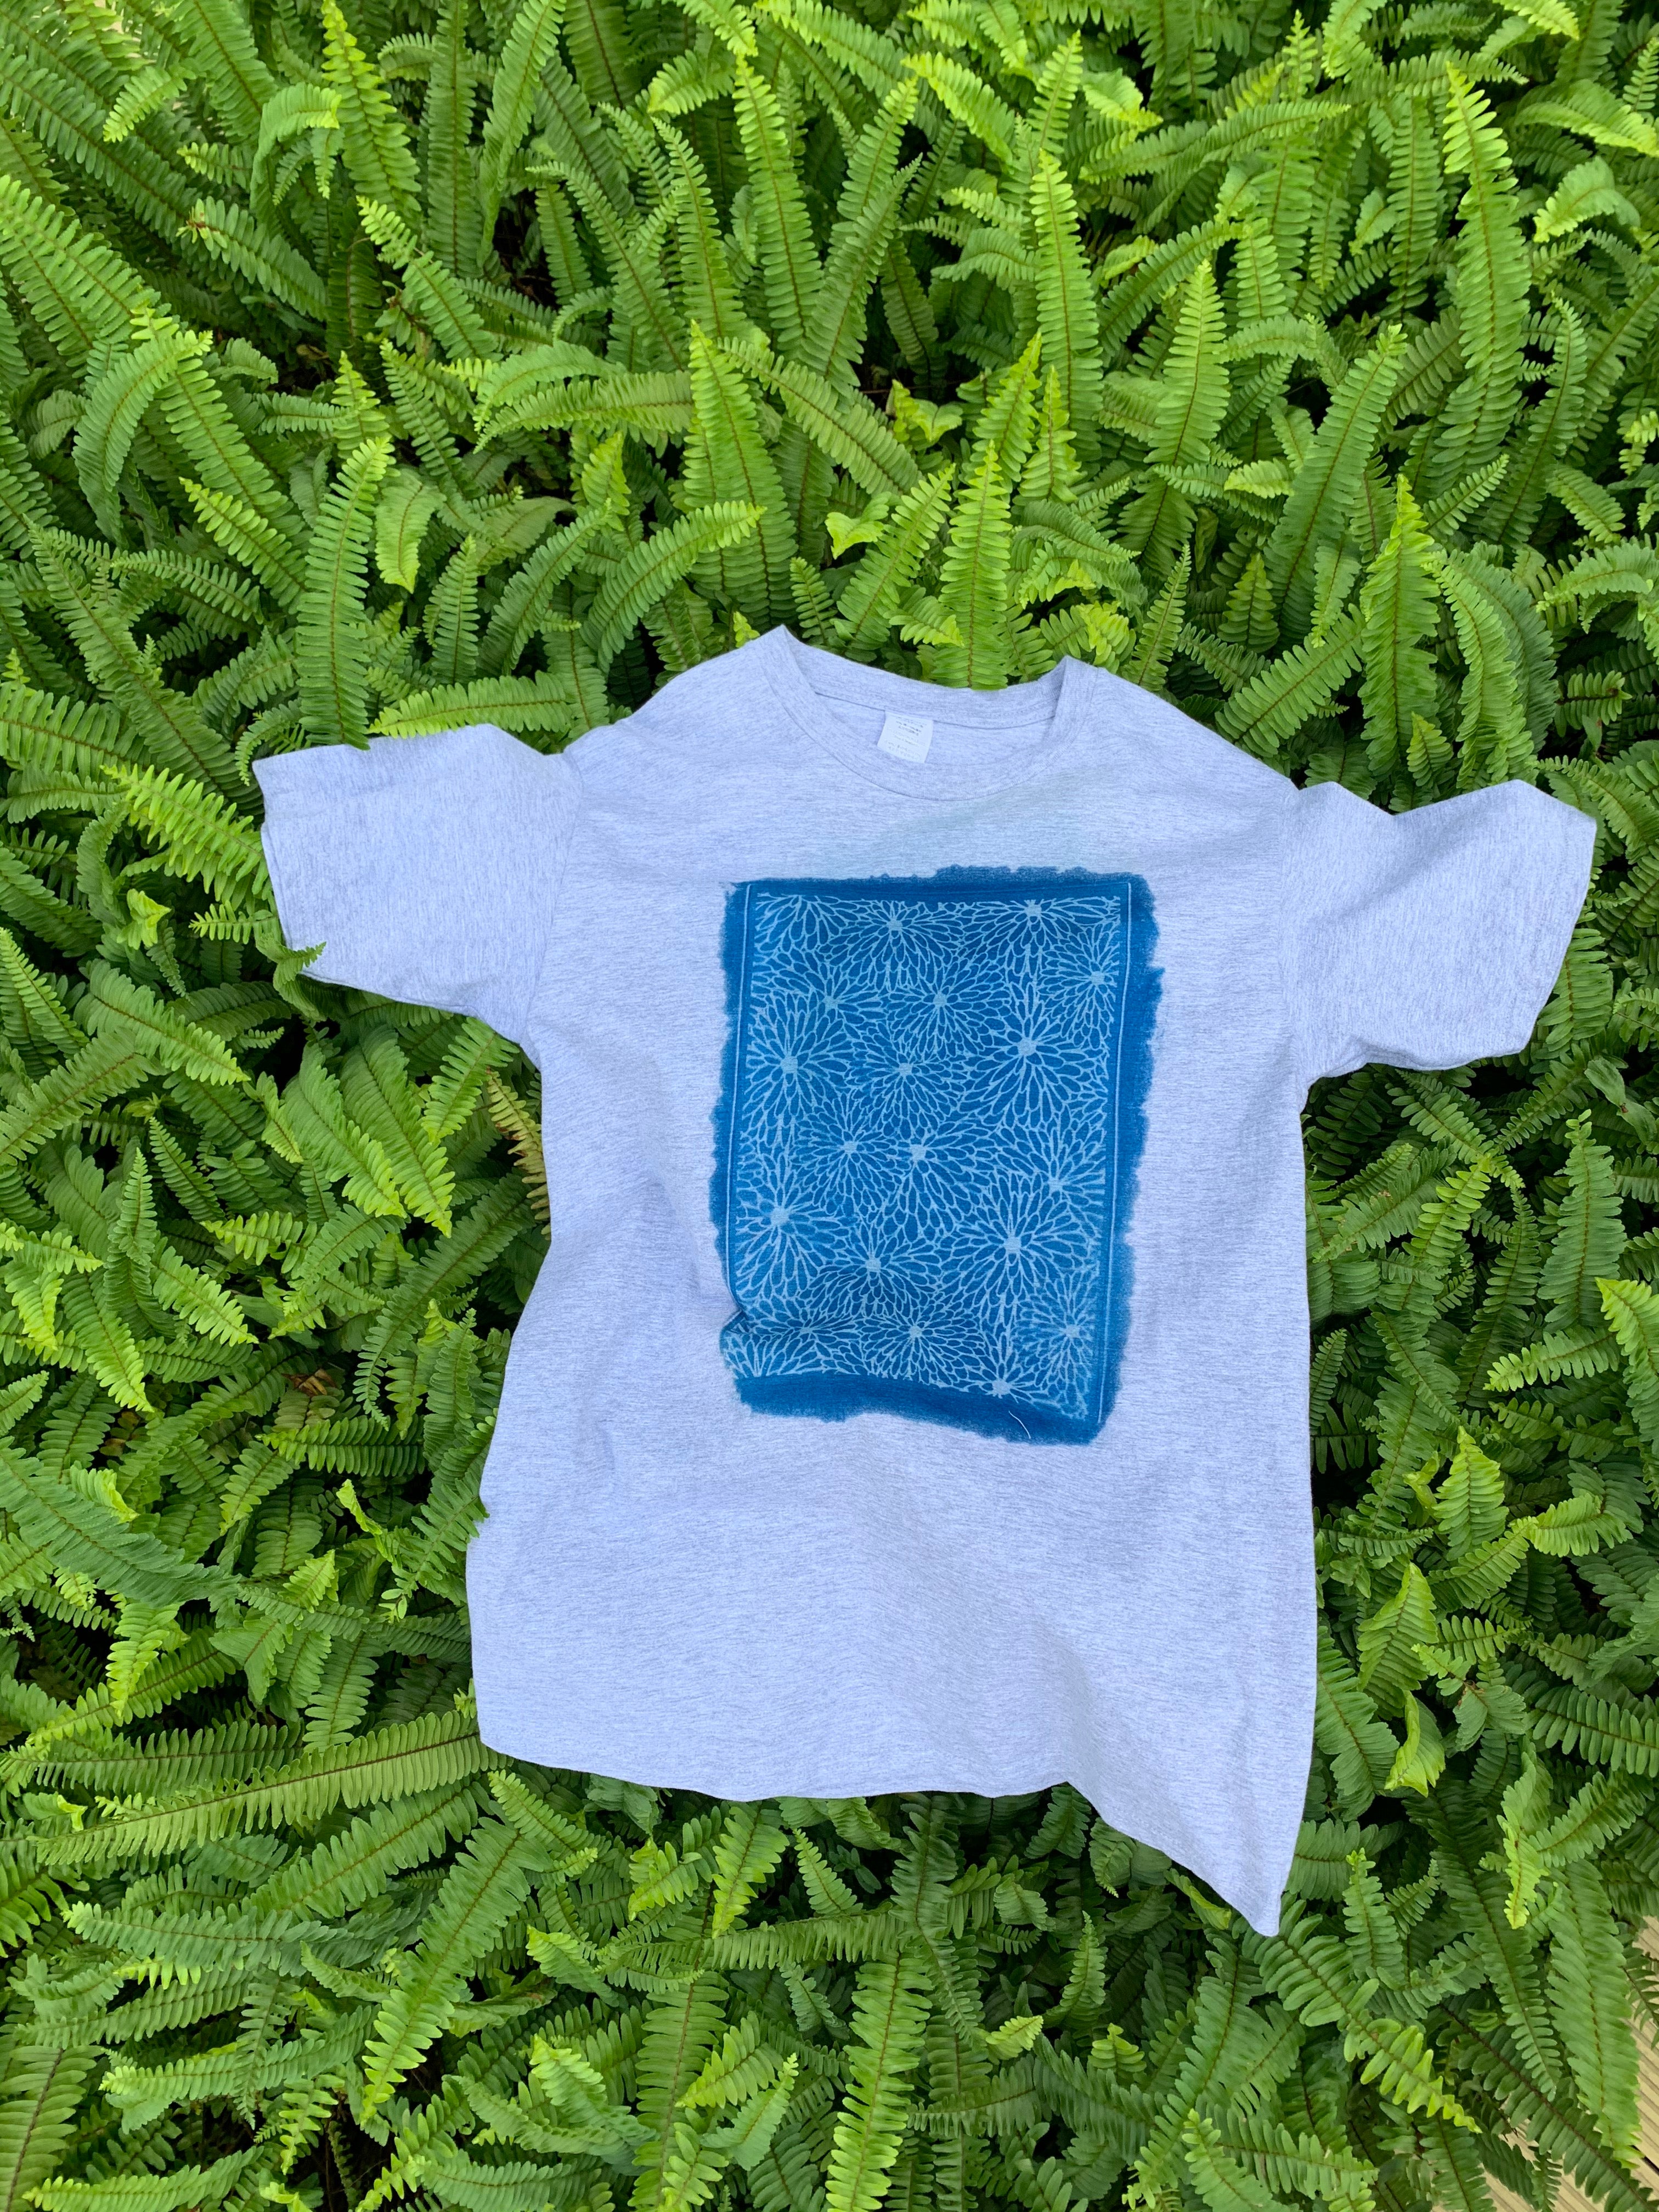 藍曬T恤 / Cyanotype Printed T-Shirt "Workshop"